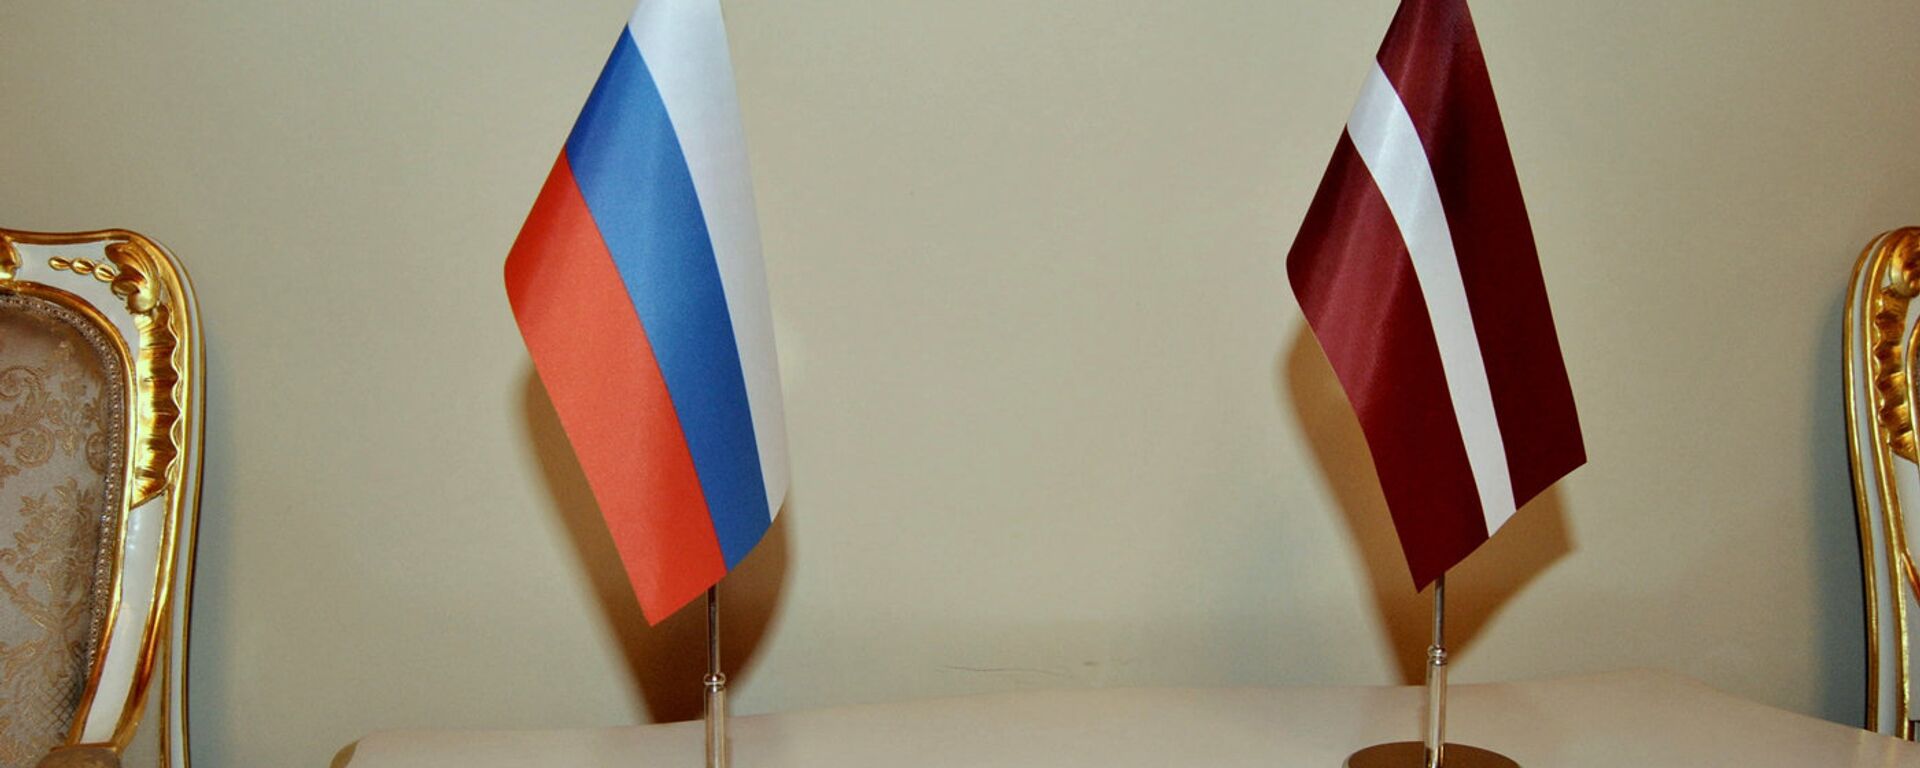 Флаги Латвии и России - Sputnik Латвия, 1920, 06.03.2021